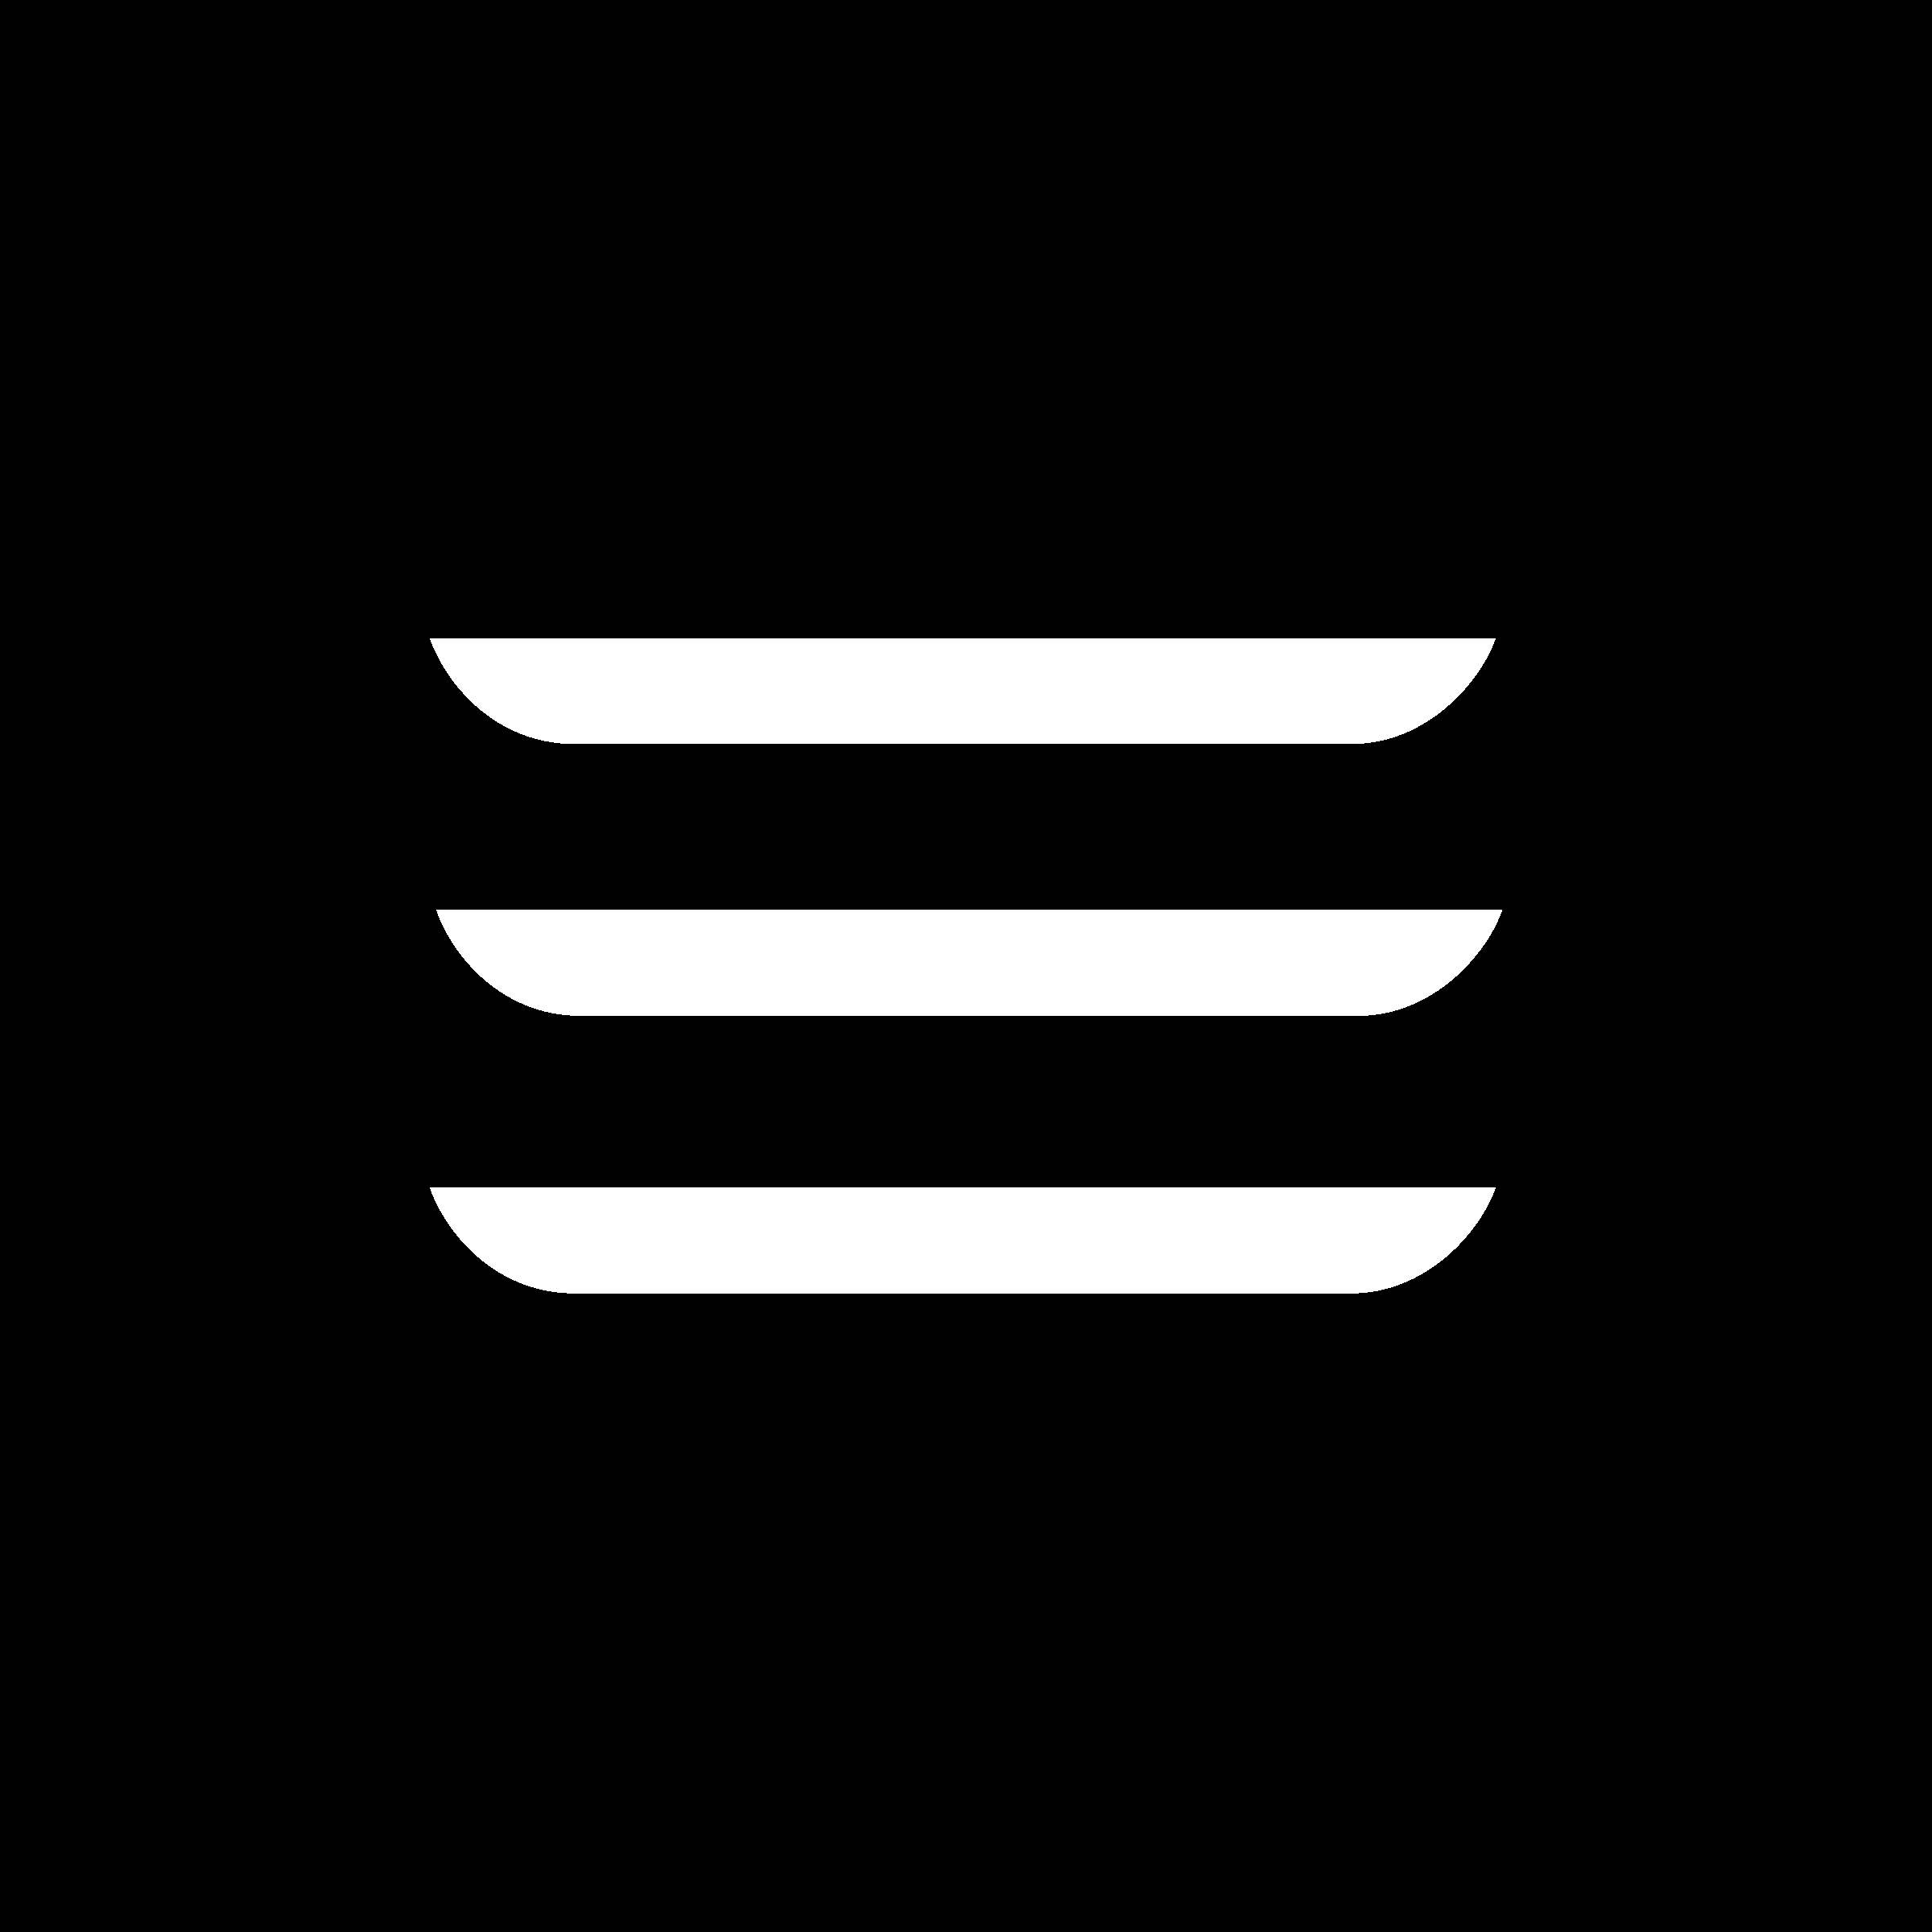 Tesla Model 3 icon Logo PNG Transparent & SVG Vector.